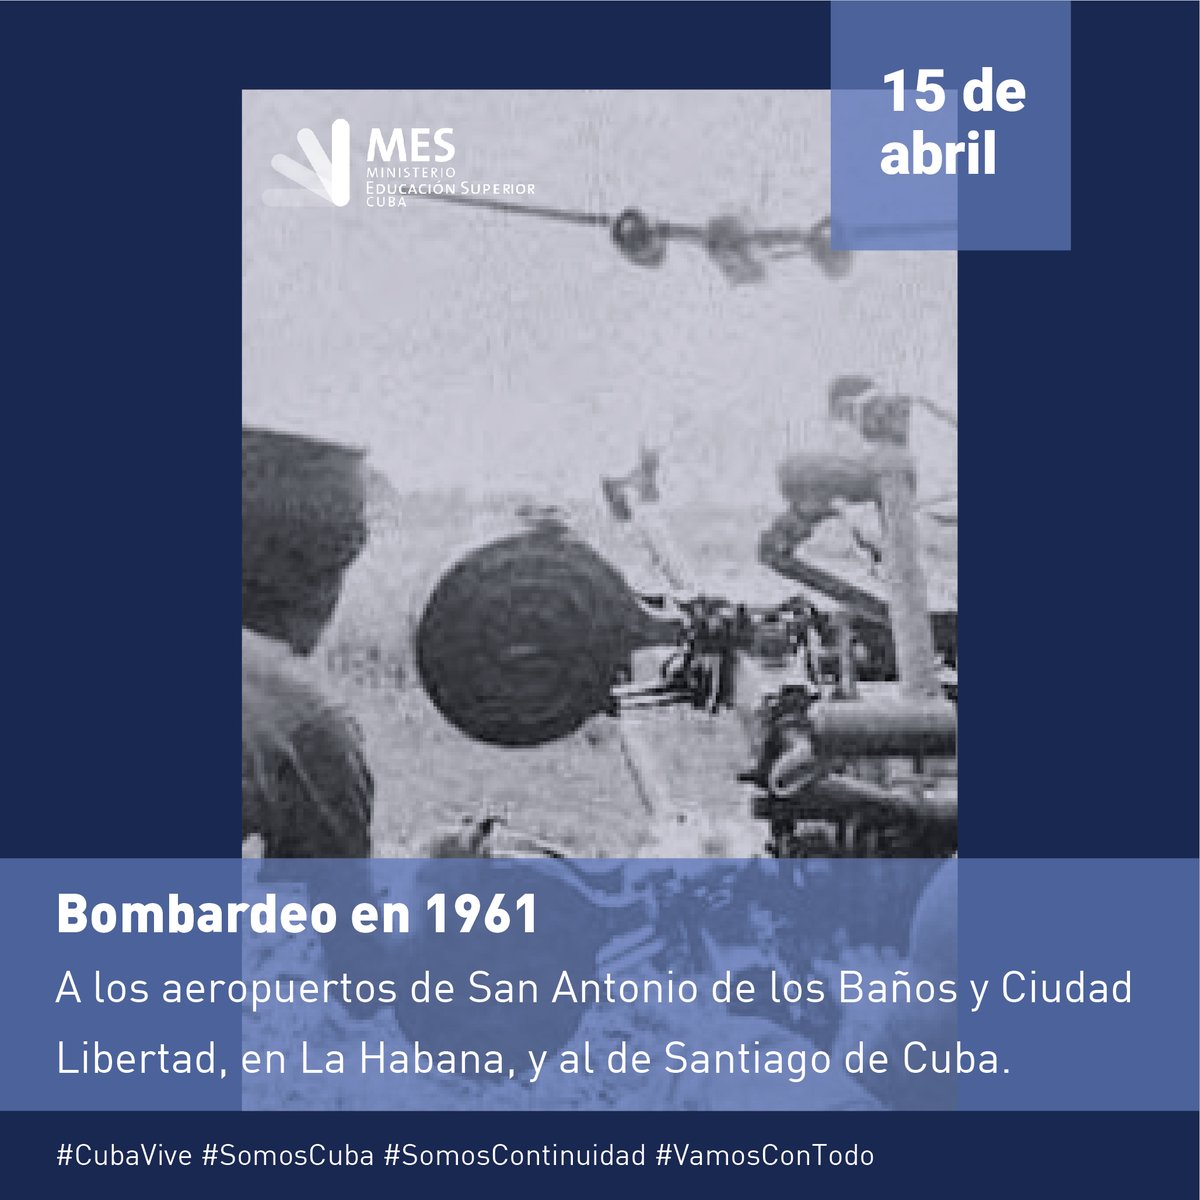 El 15 de abril de 1961 aviones piratas atacaron tres aeropuertos cubanos. Era el preludio de la invasión mercenaria por Playa Girón dos días después. Se perdieron valiosas vidas, pero se reafirmó la fe en la #Victoria #AbrilDeVictorias #TenemosMemoria